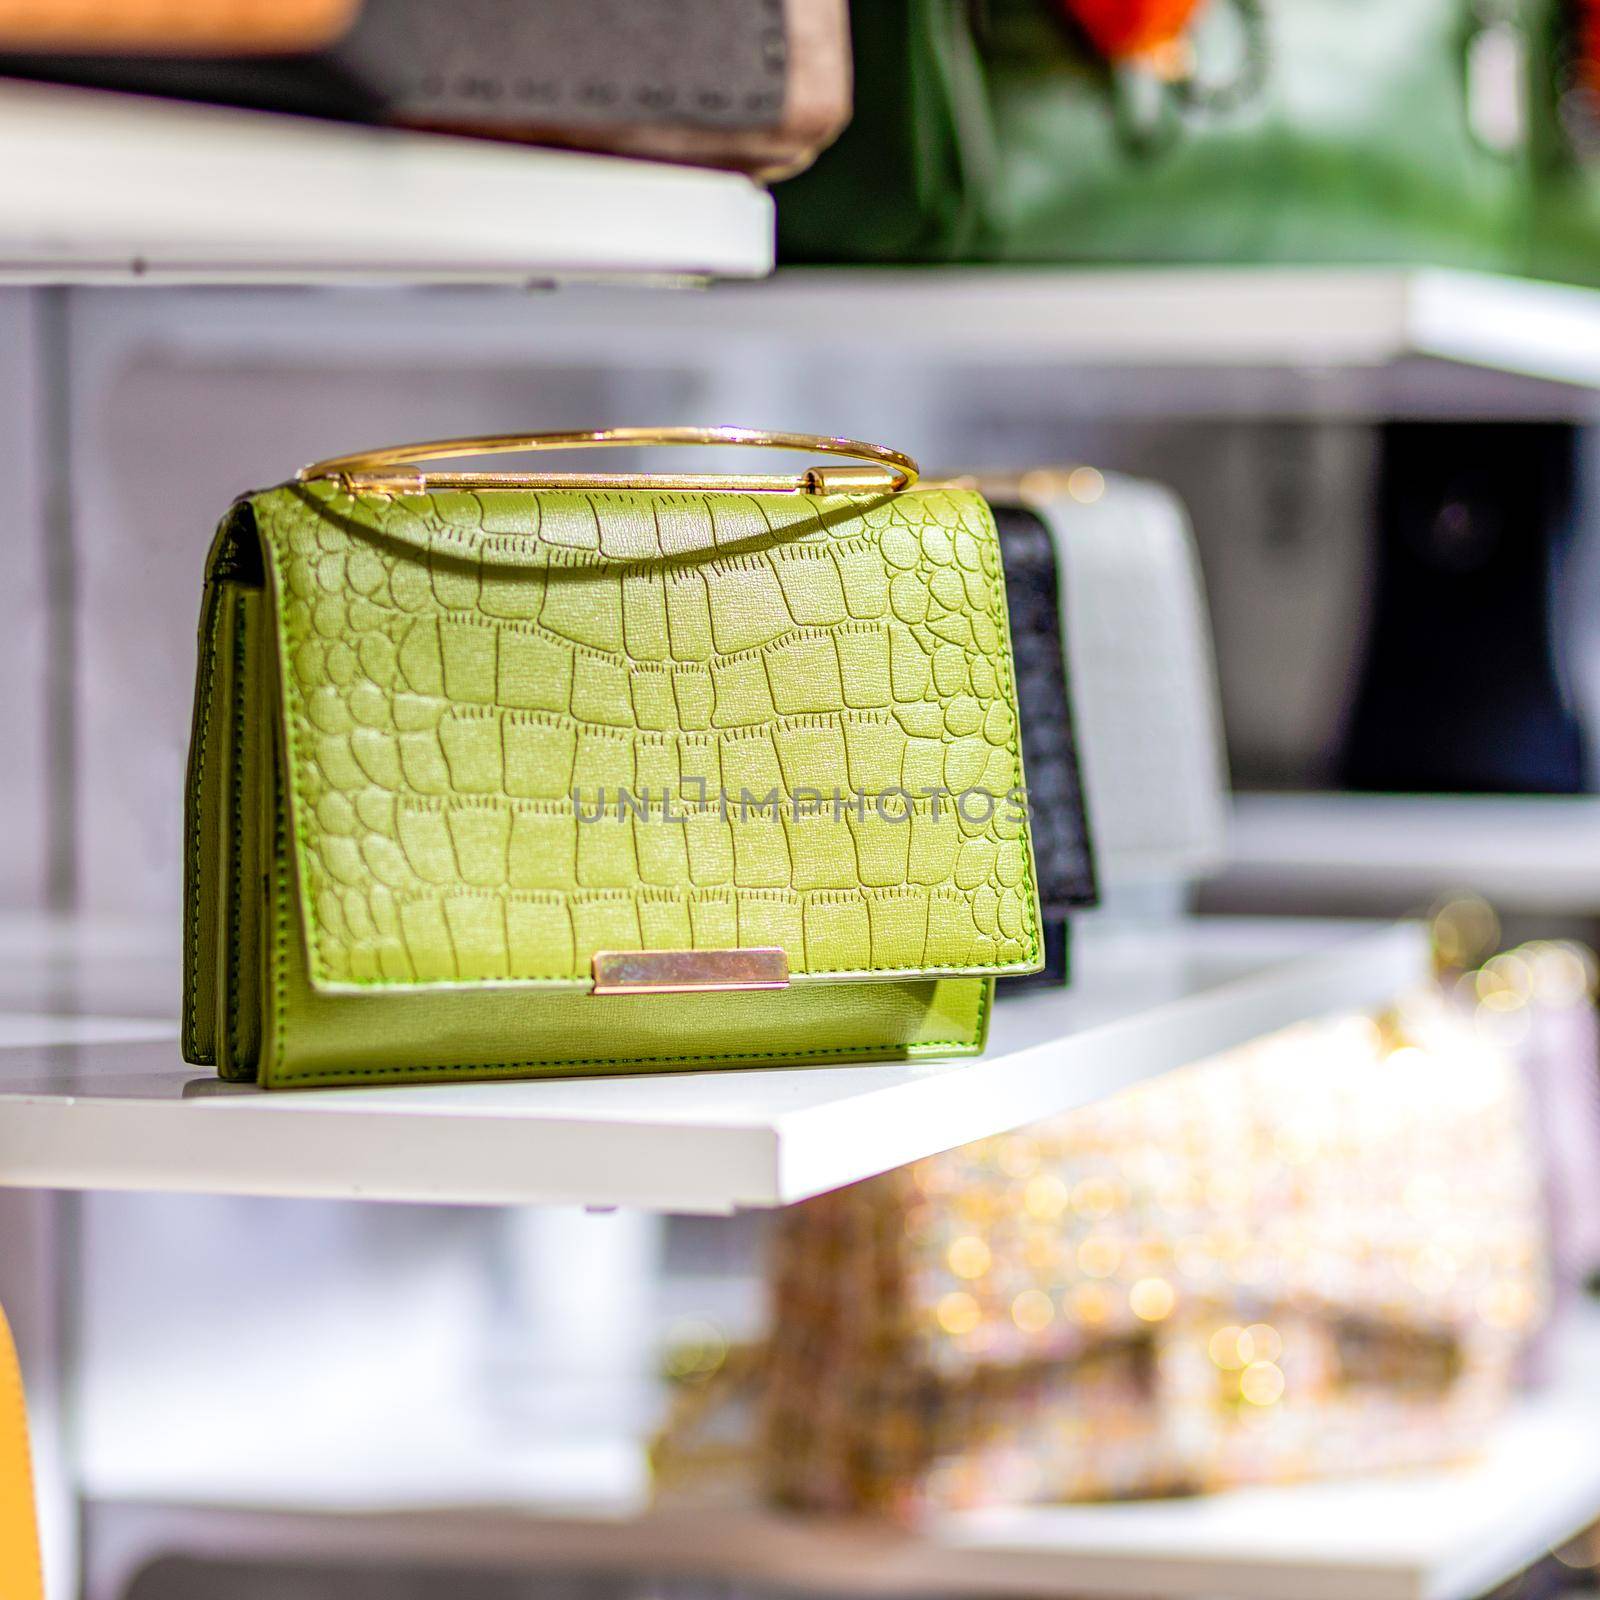 Handbags in a luxury fashion store by ferhad